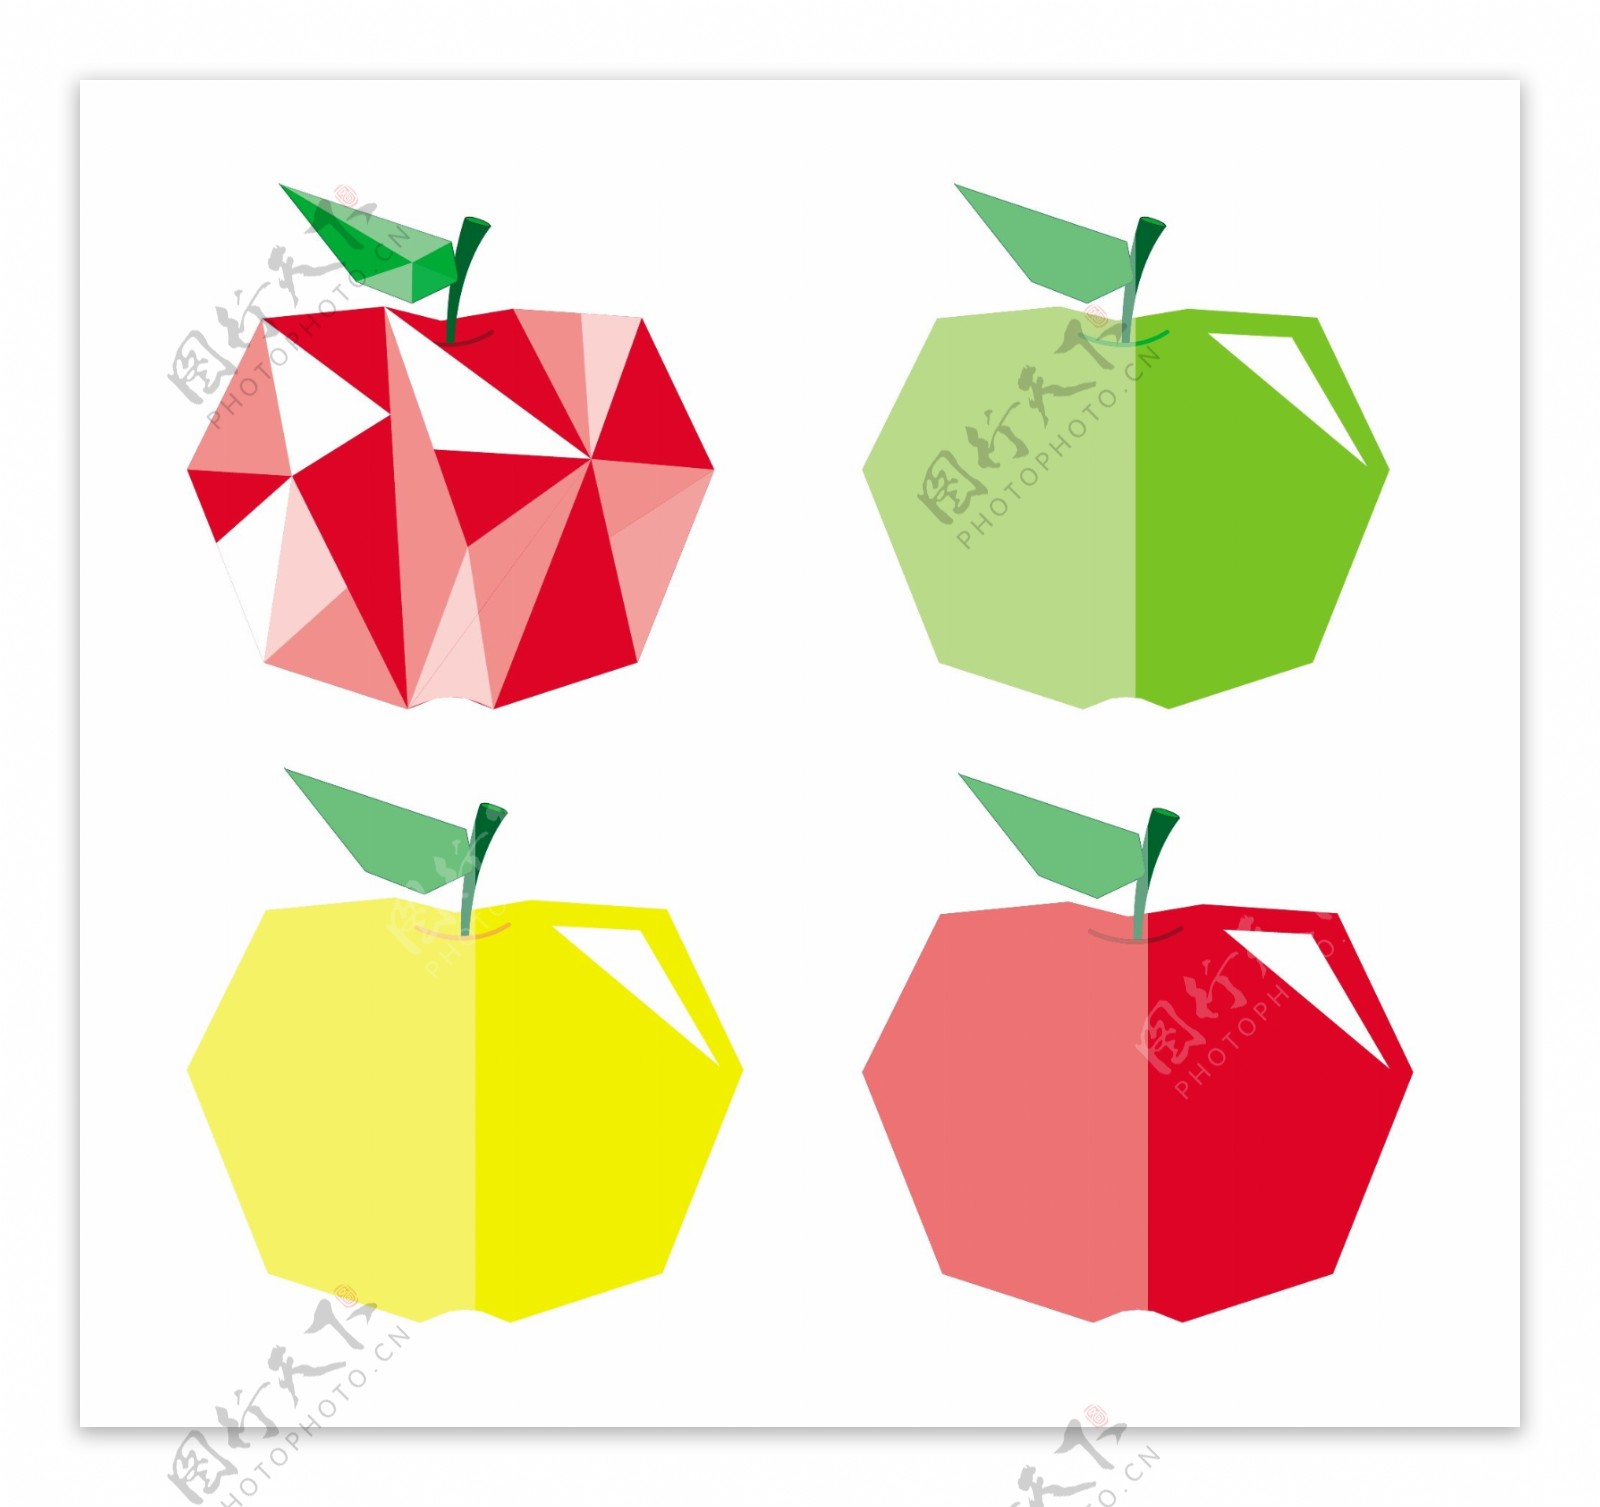 钻石形状的五颜六色的苹果